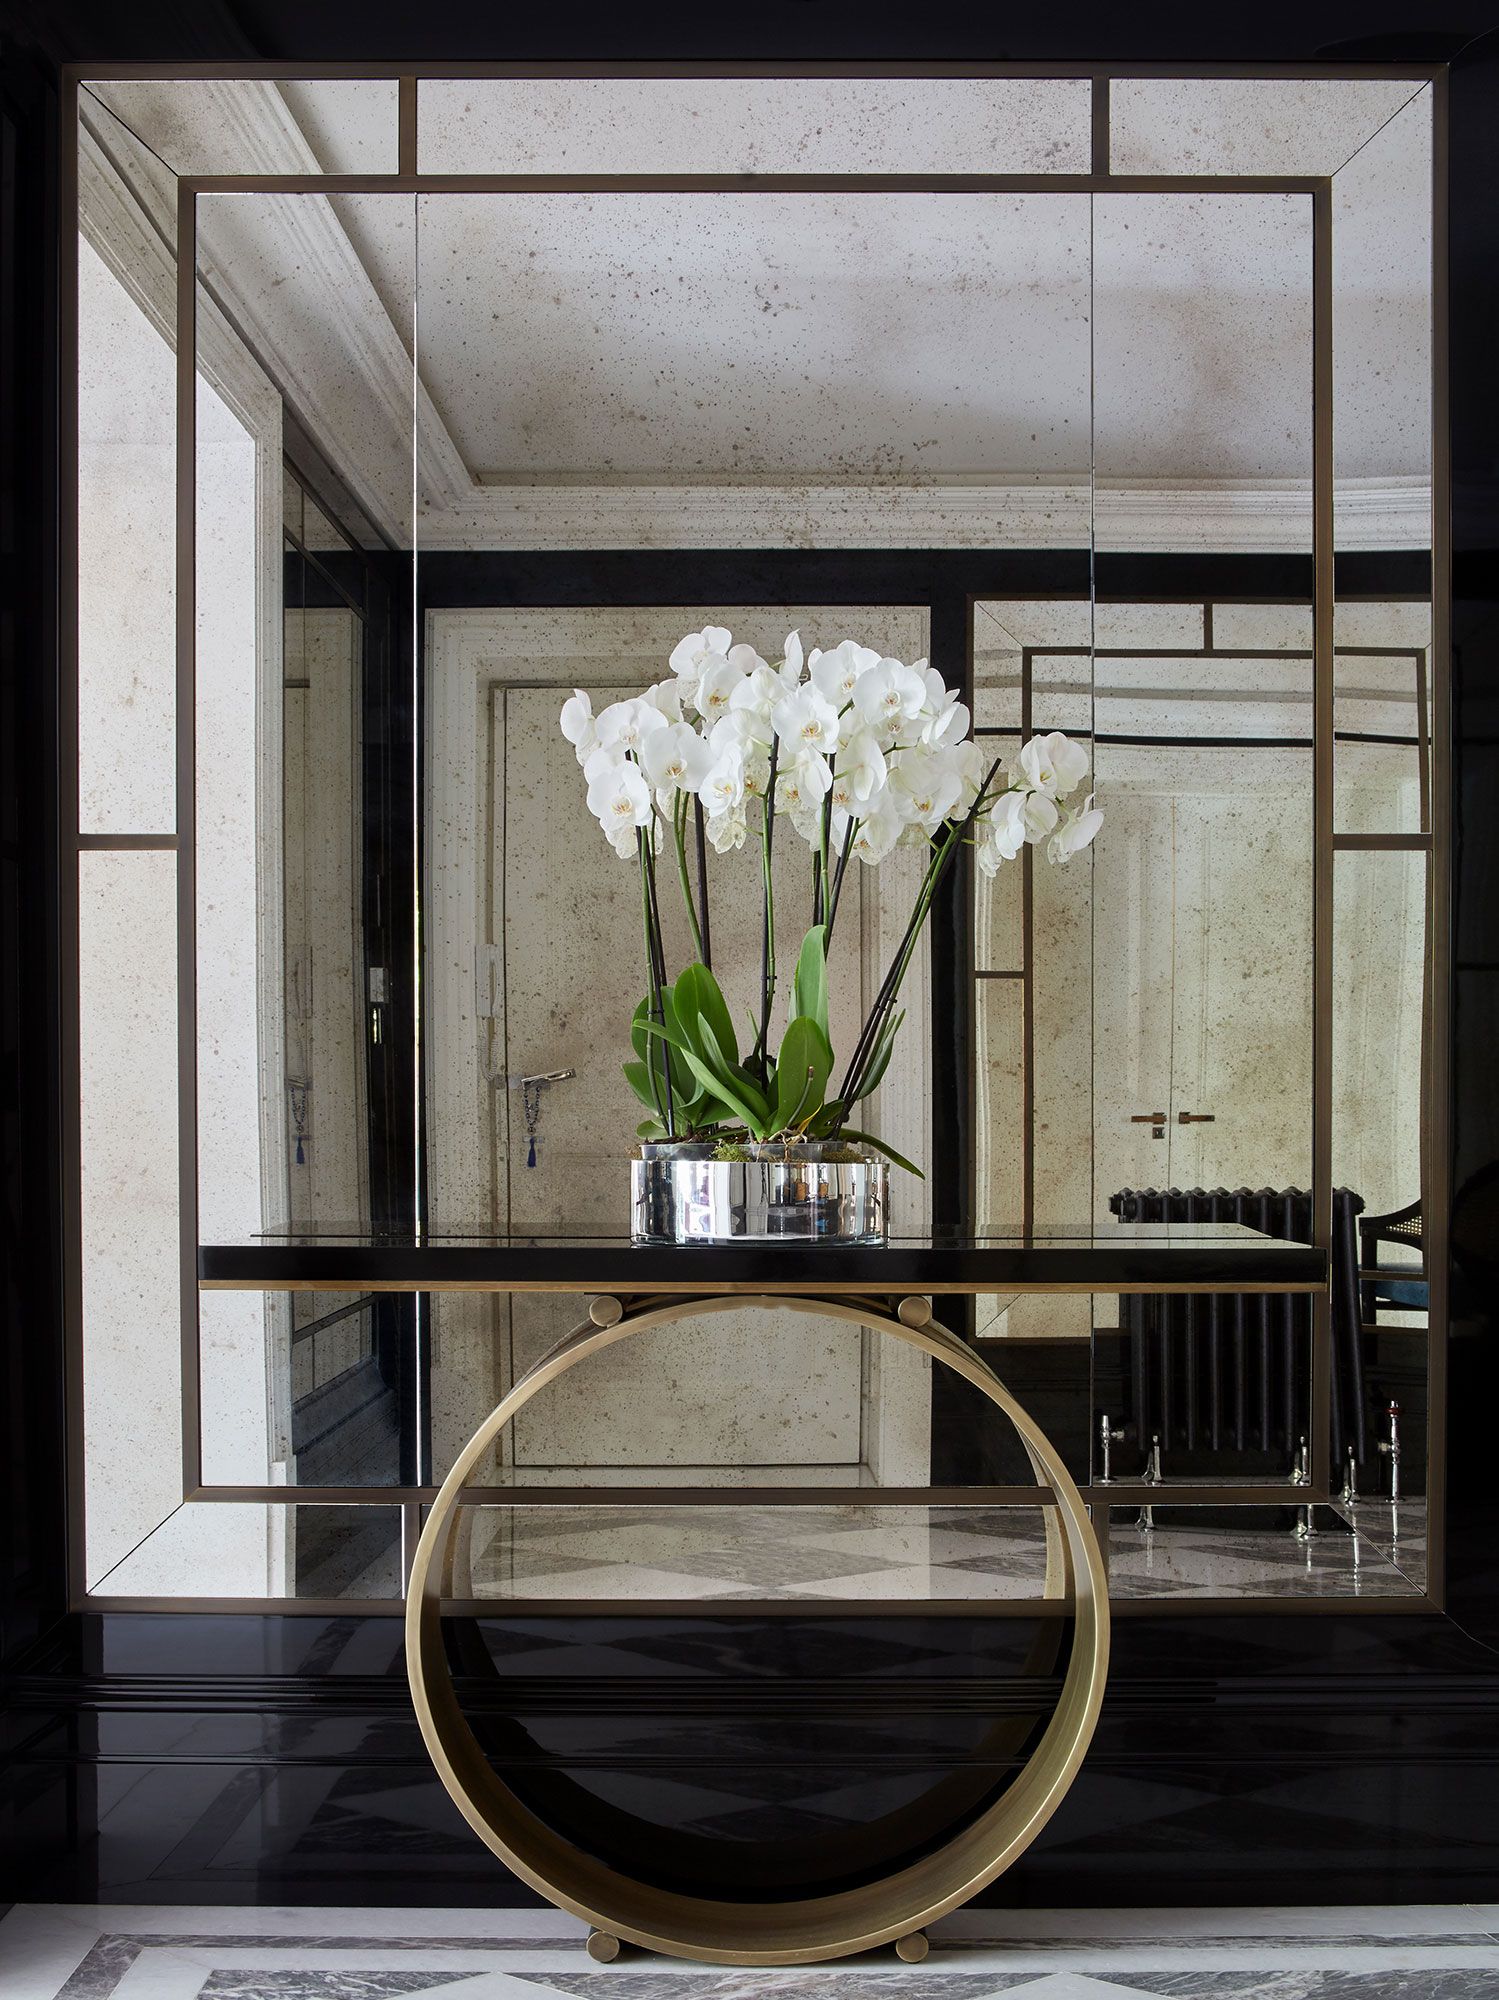 Lối vào căn hộ sang chảnh với tone đen huyền bí, kết hợp bàn gắn tường chân tròn cùng những bông hoa phong lan trắng muốt. Tấm gương 'full' ngay tường tại vị trí này cũng giúp bạn ngắm nhìn hết vẻ đẹp sang chảnh của hành lang phản chiếu từ nó.